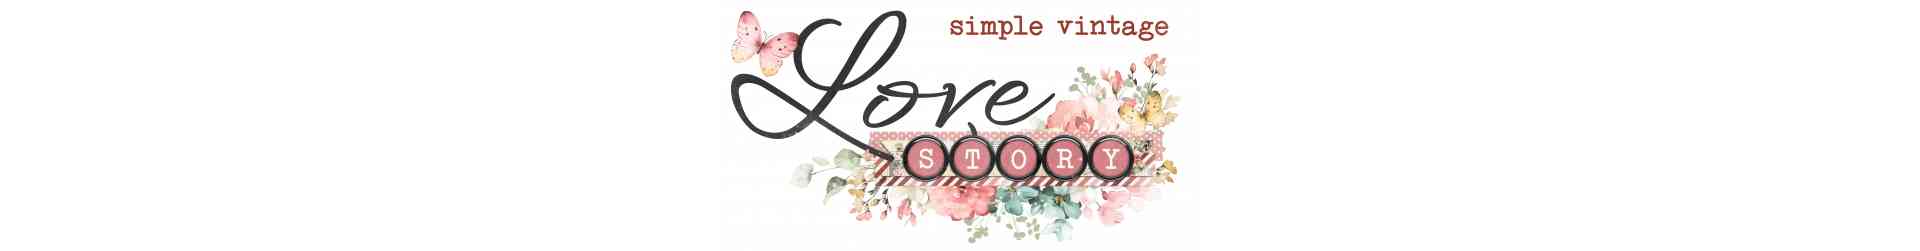 SIMPLE VINTAGE LOVE STORY